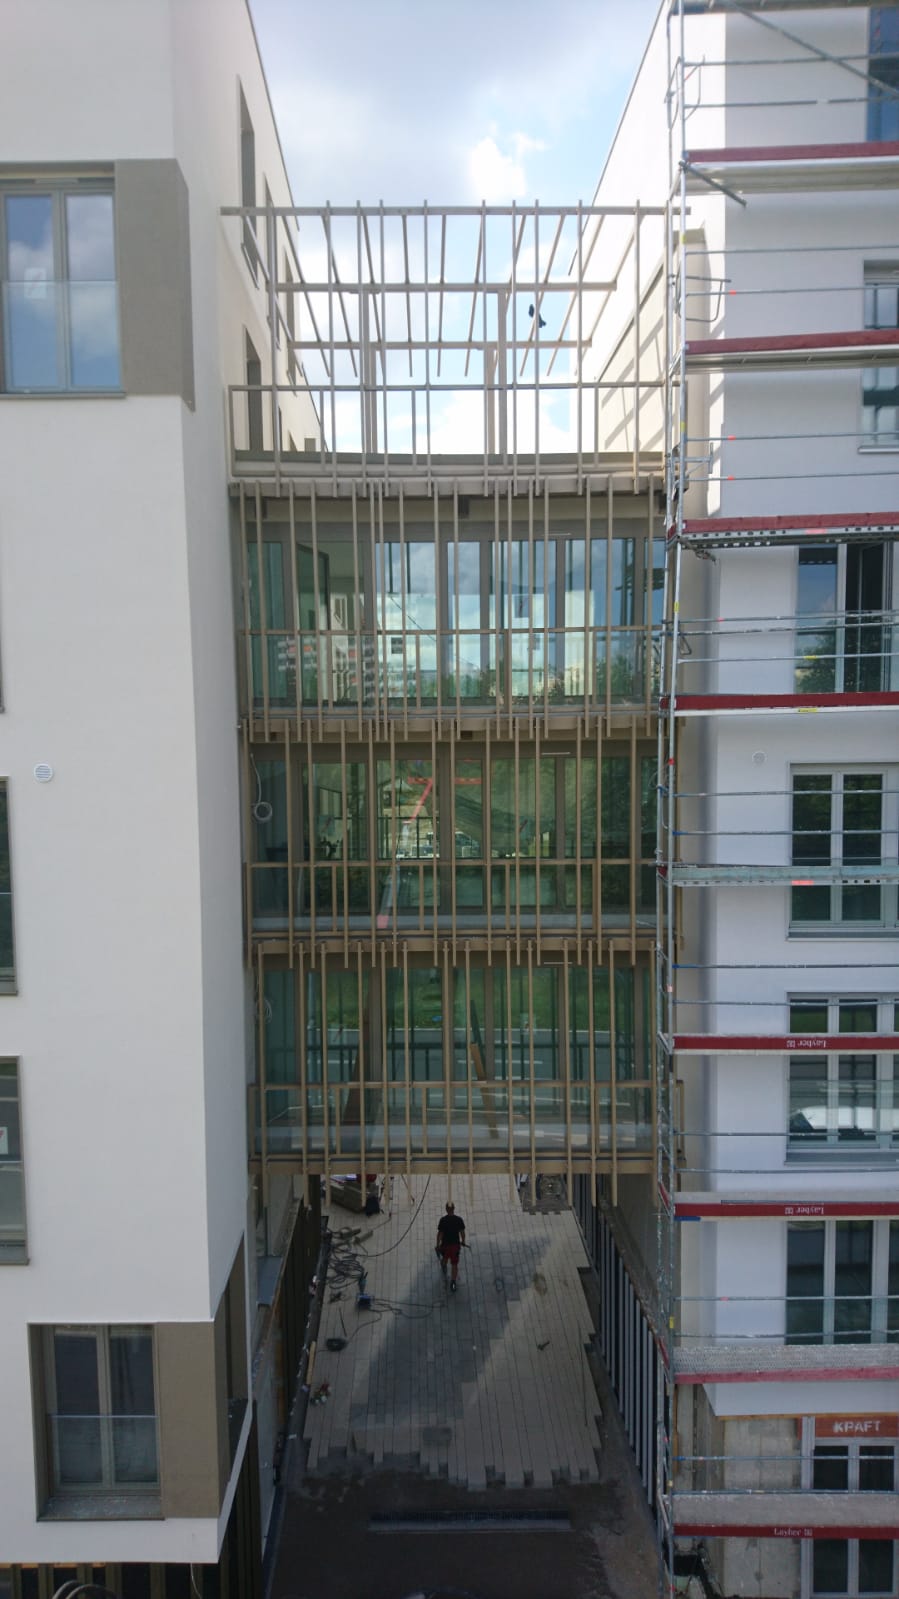 Fugenbauteil mit Balkone - pulver beschichtet - BHB - Wohnanlage Fritz Erler Straße München 2019